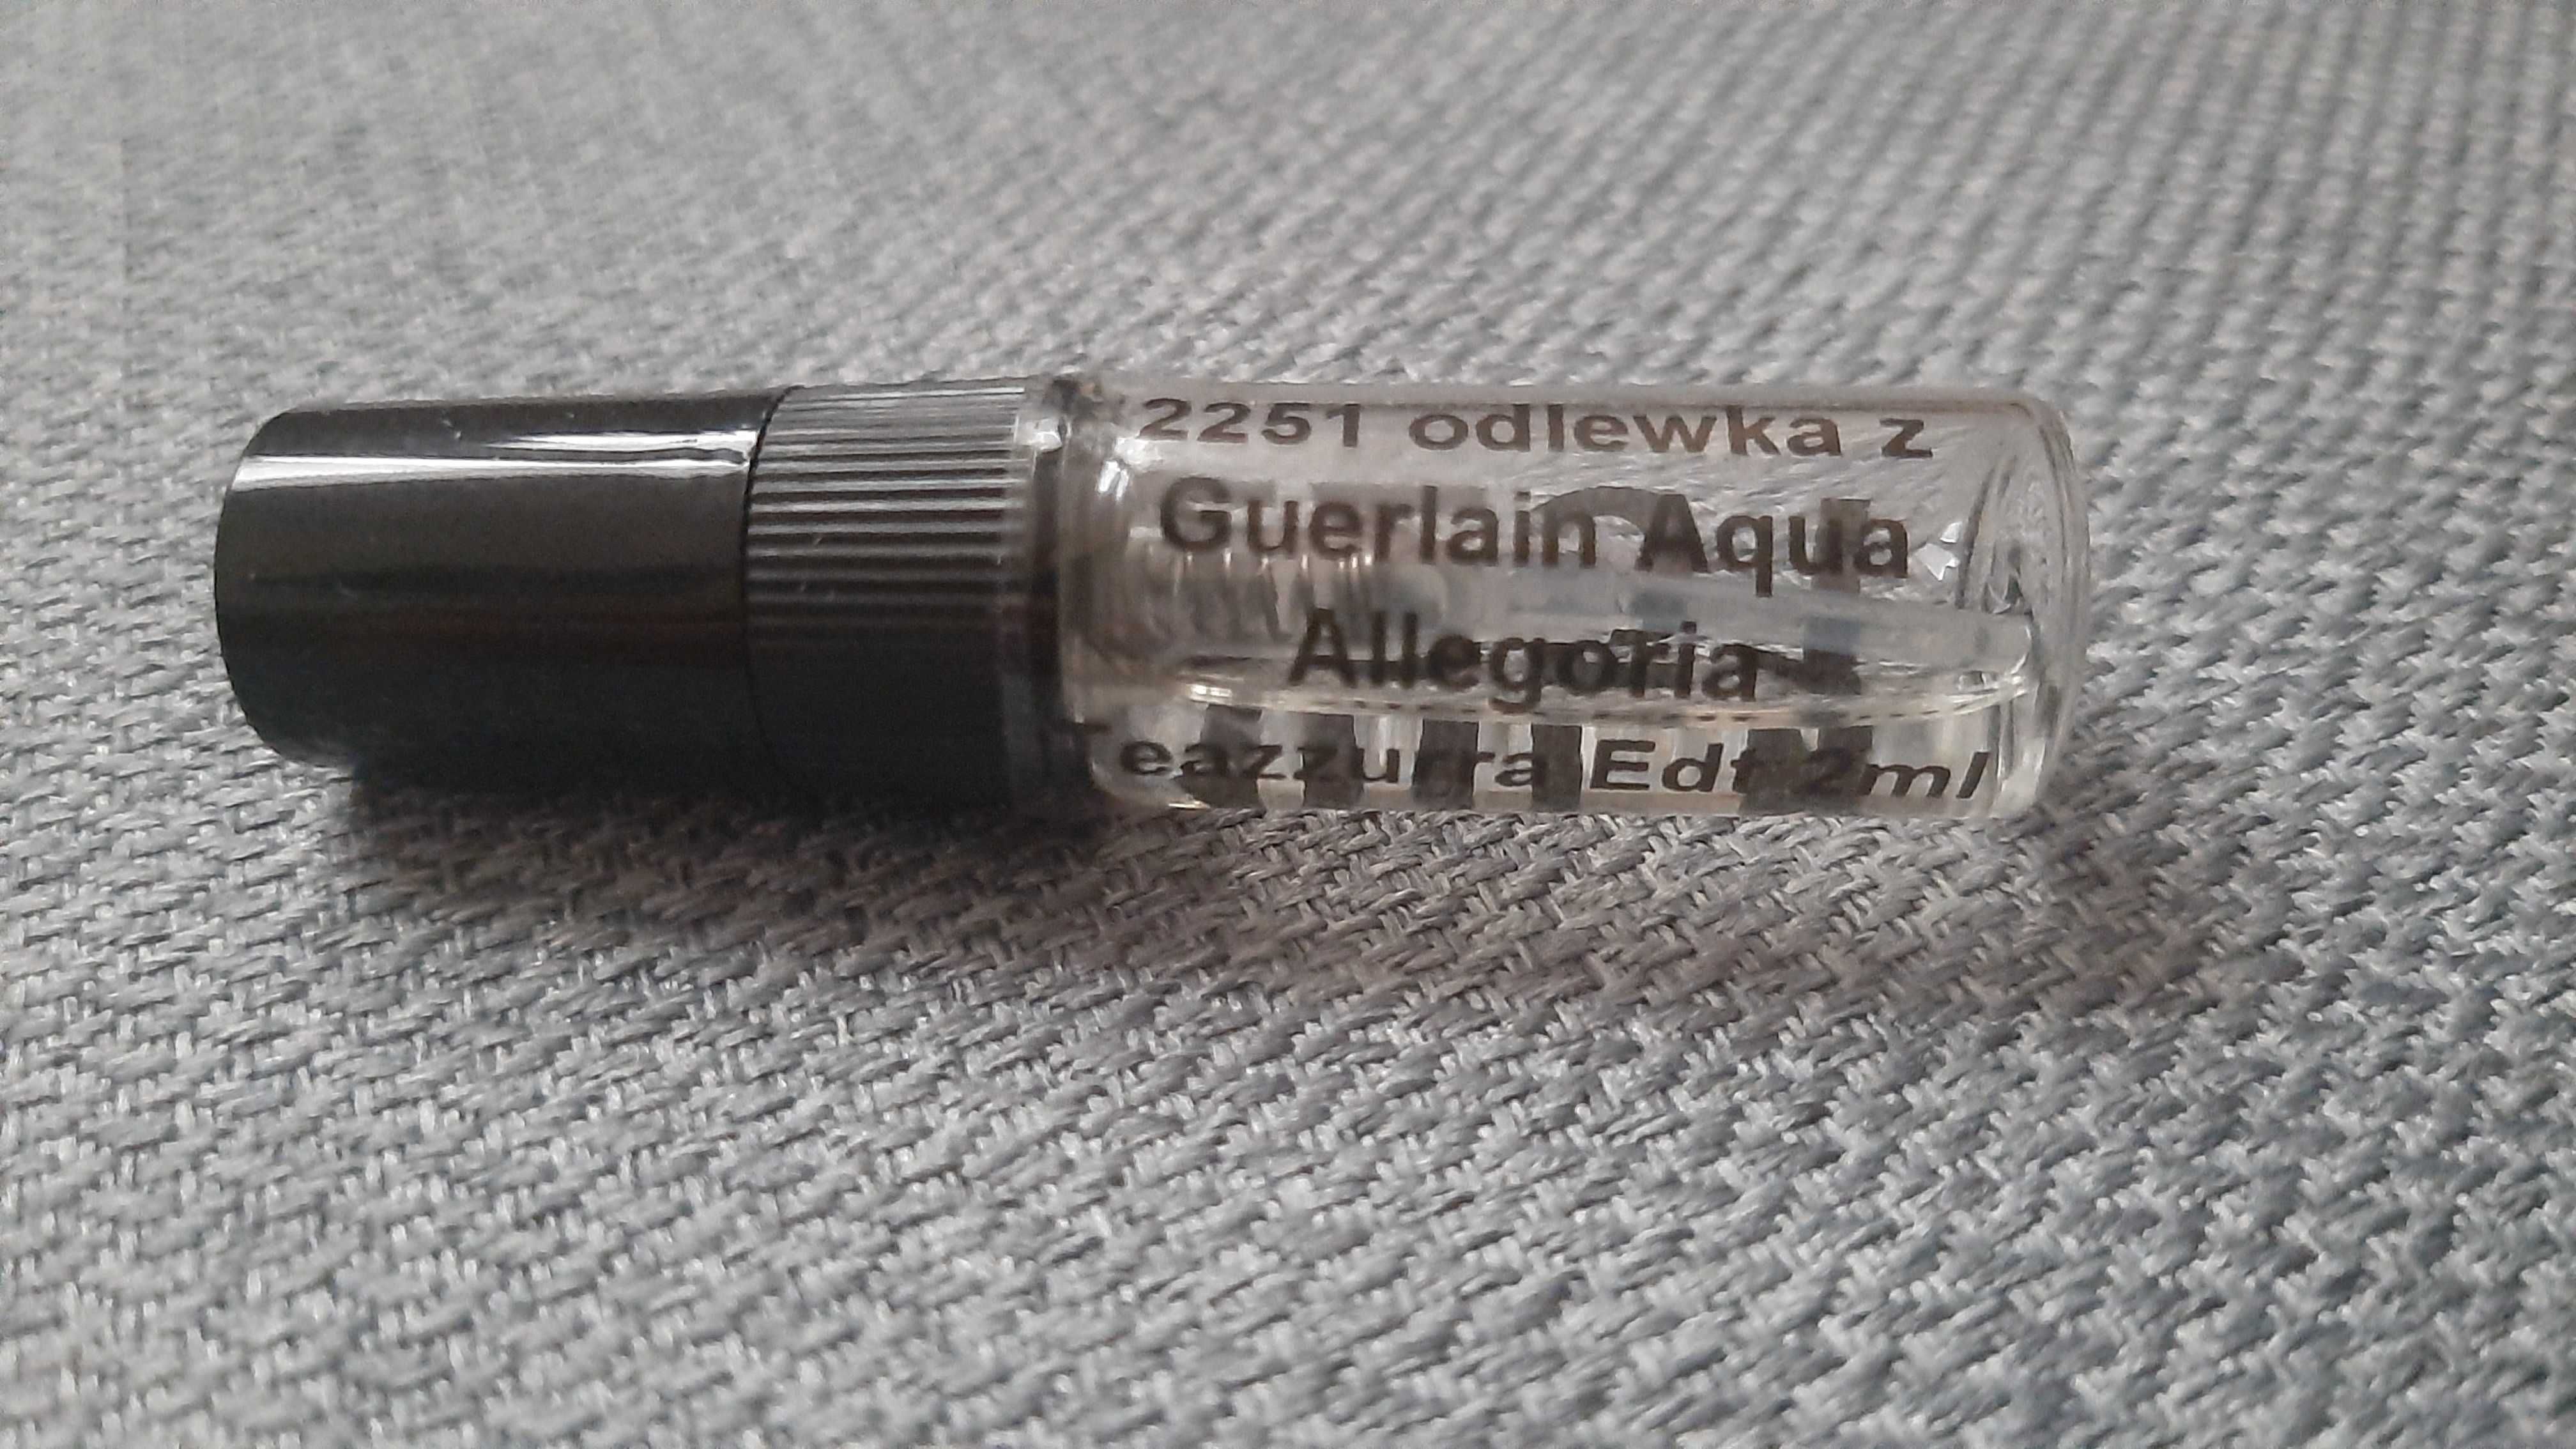 Guerlain Aqua Allegoria Teazzurra Edt 2 ml spray